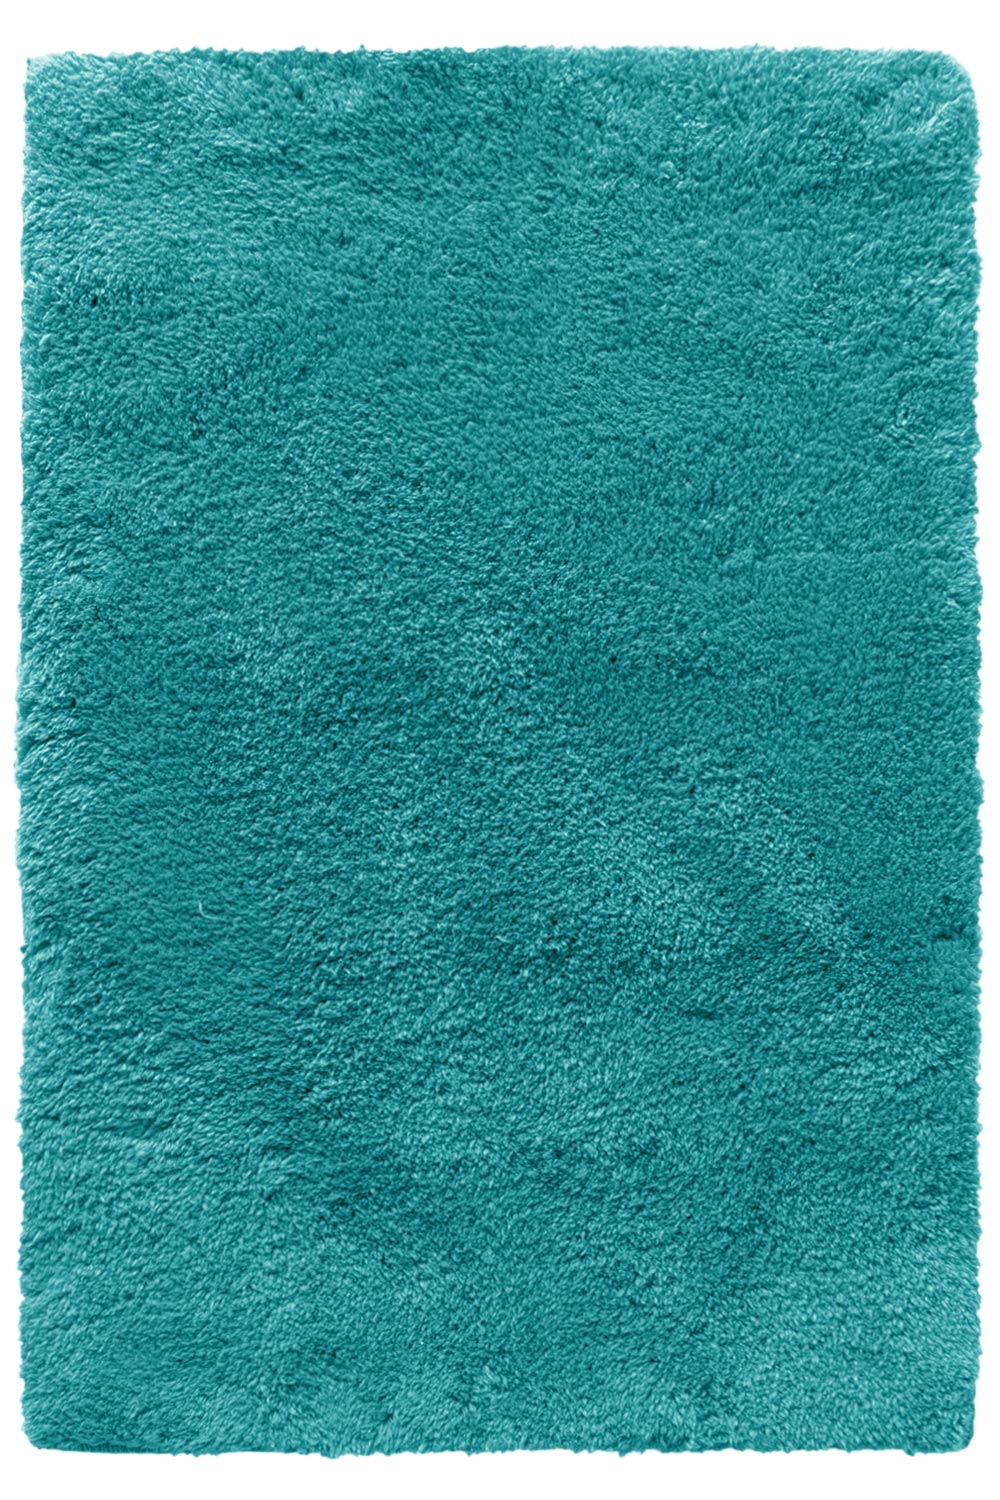 Kusový koberec SPRING green